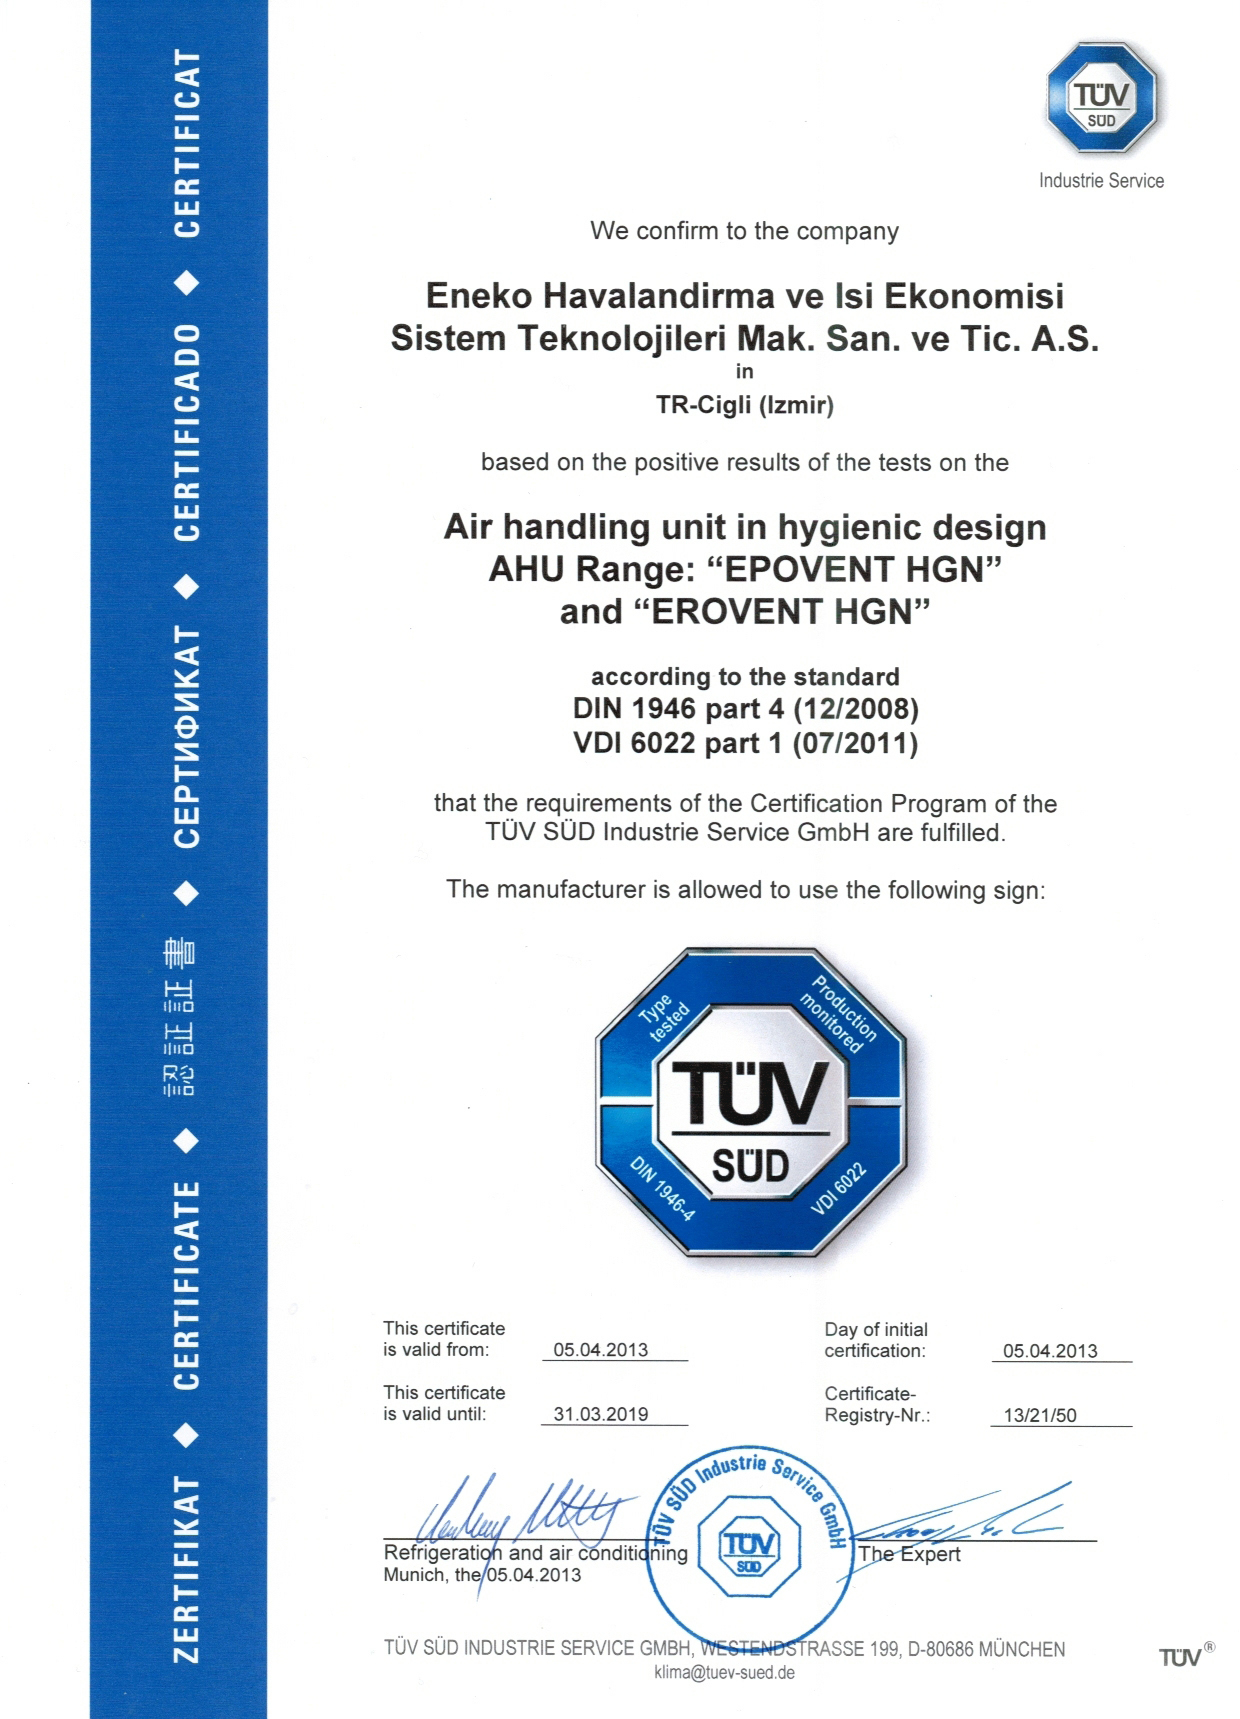 EPOVENT ve EROVENT serisi cihazlarımız için TÜV SÜD hijyen sertifikası alınmıştır.